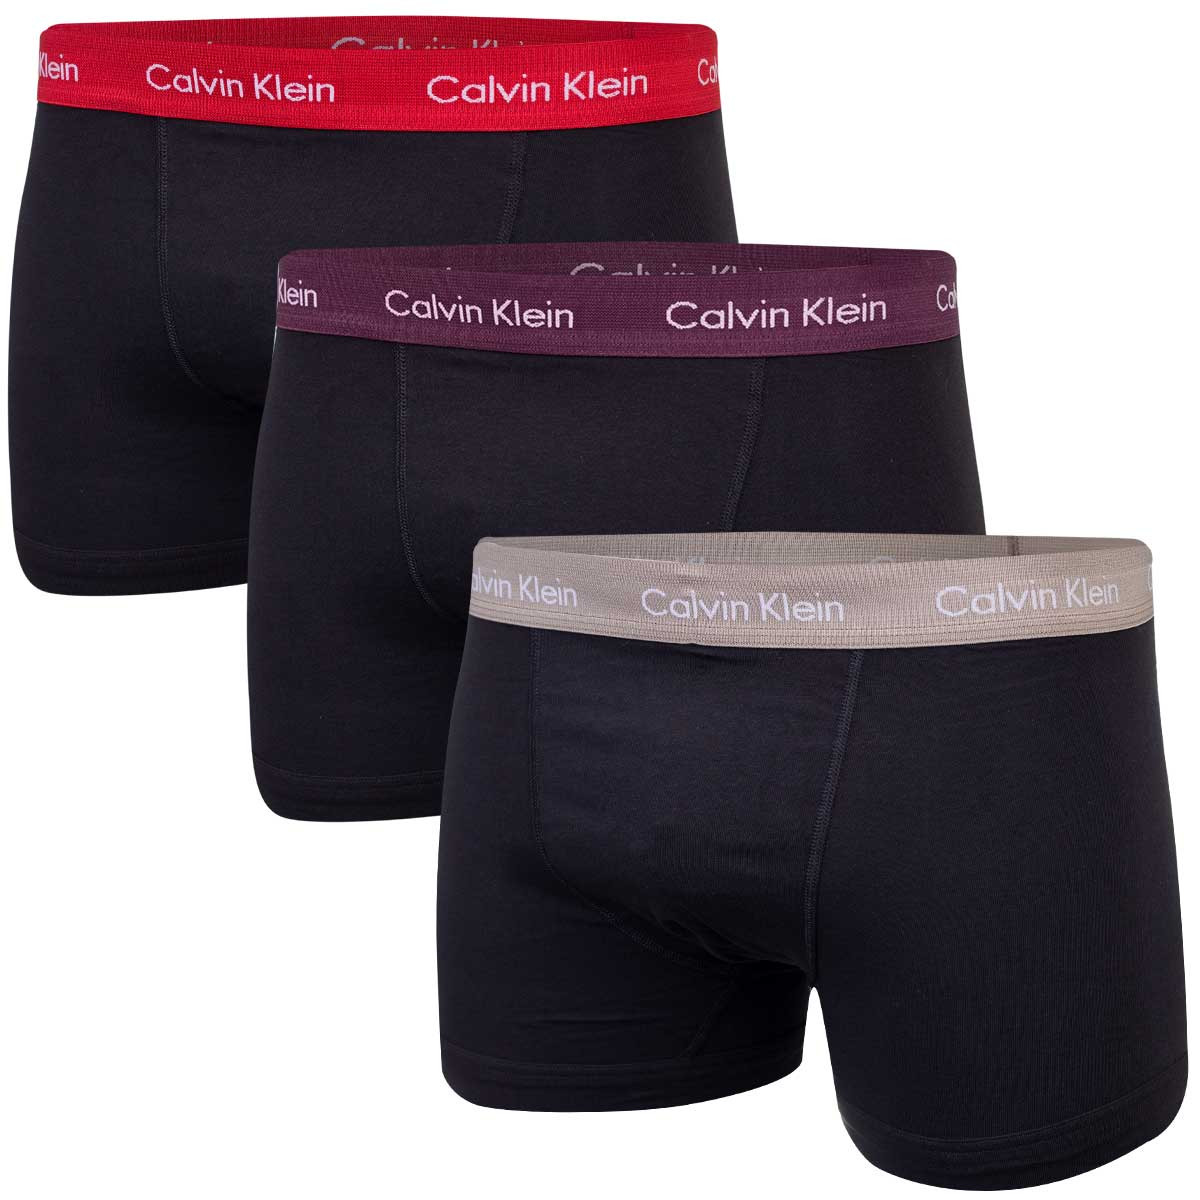 Pánské boxerky Calvin Klein spodní prádlo 3Pack 0000U2662GCPZ Black XL